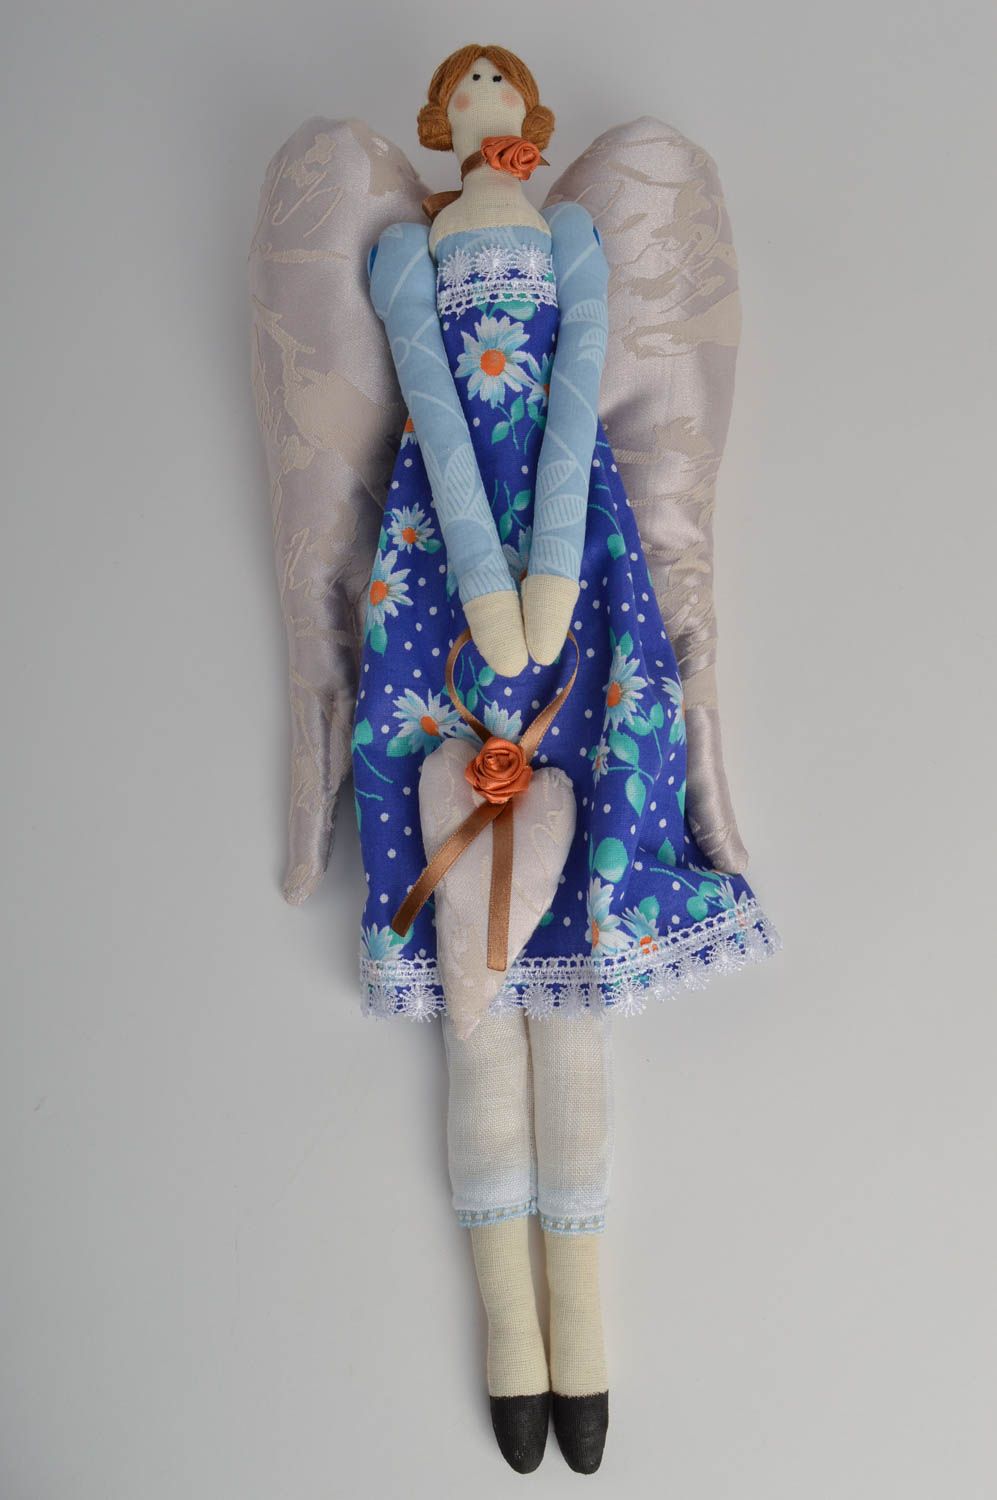 Ange en tissu fait main poupée originale avec ficelle jouet pour enfant photo 2